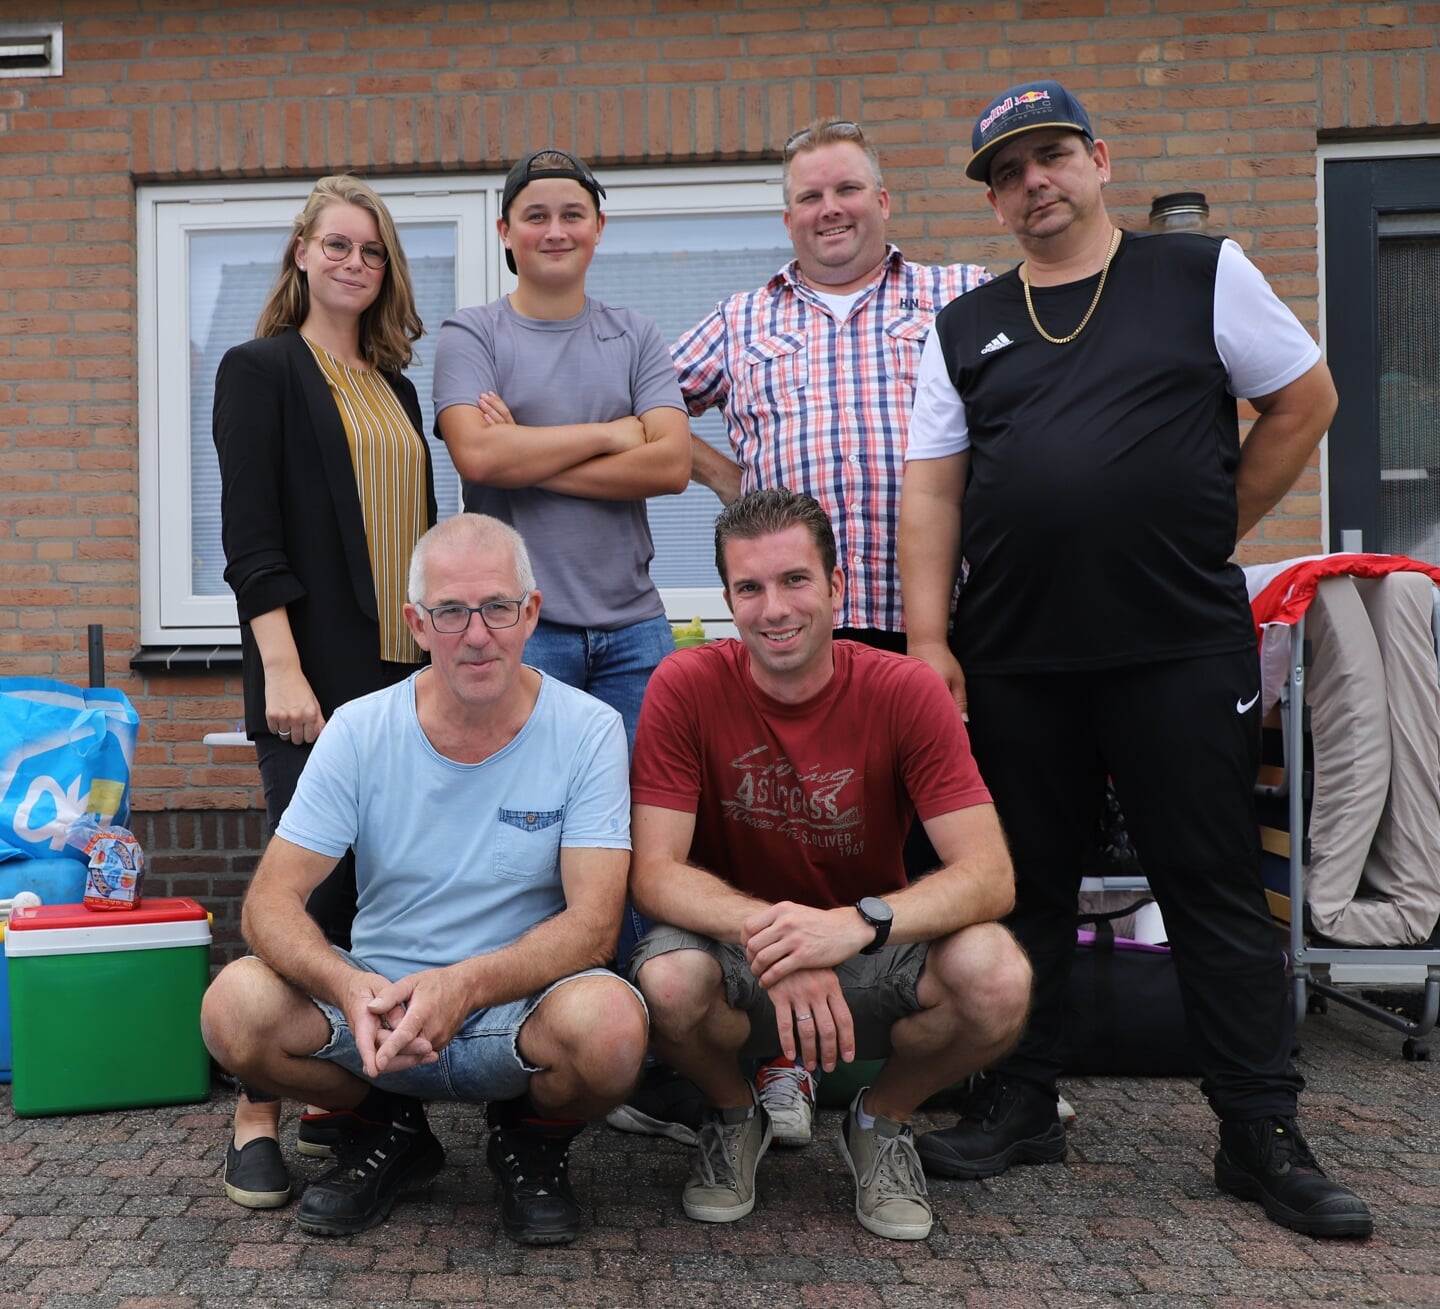 Organisatoren zomerkamp jongerenkamp vanuit Lepelstraat.